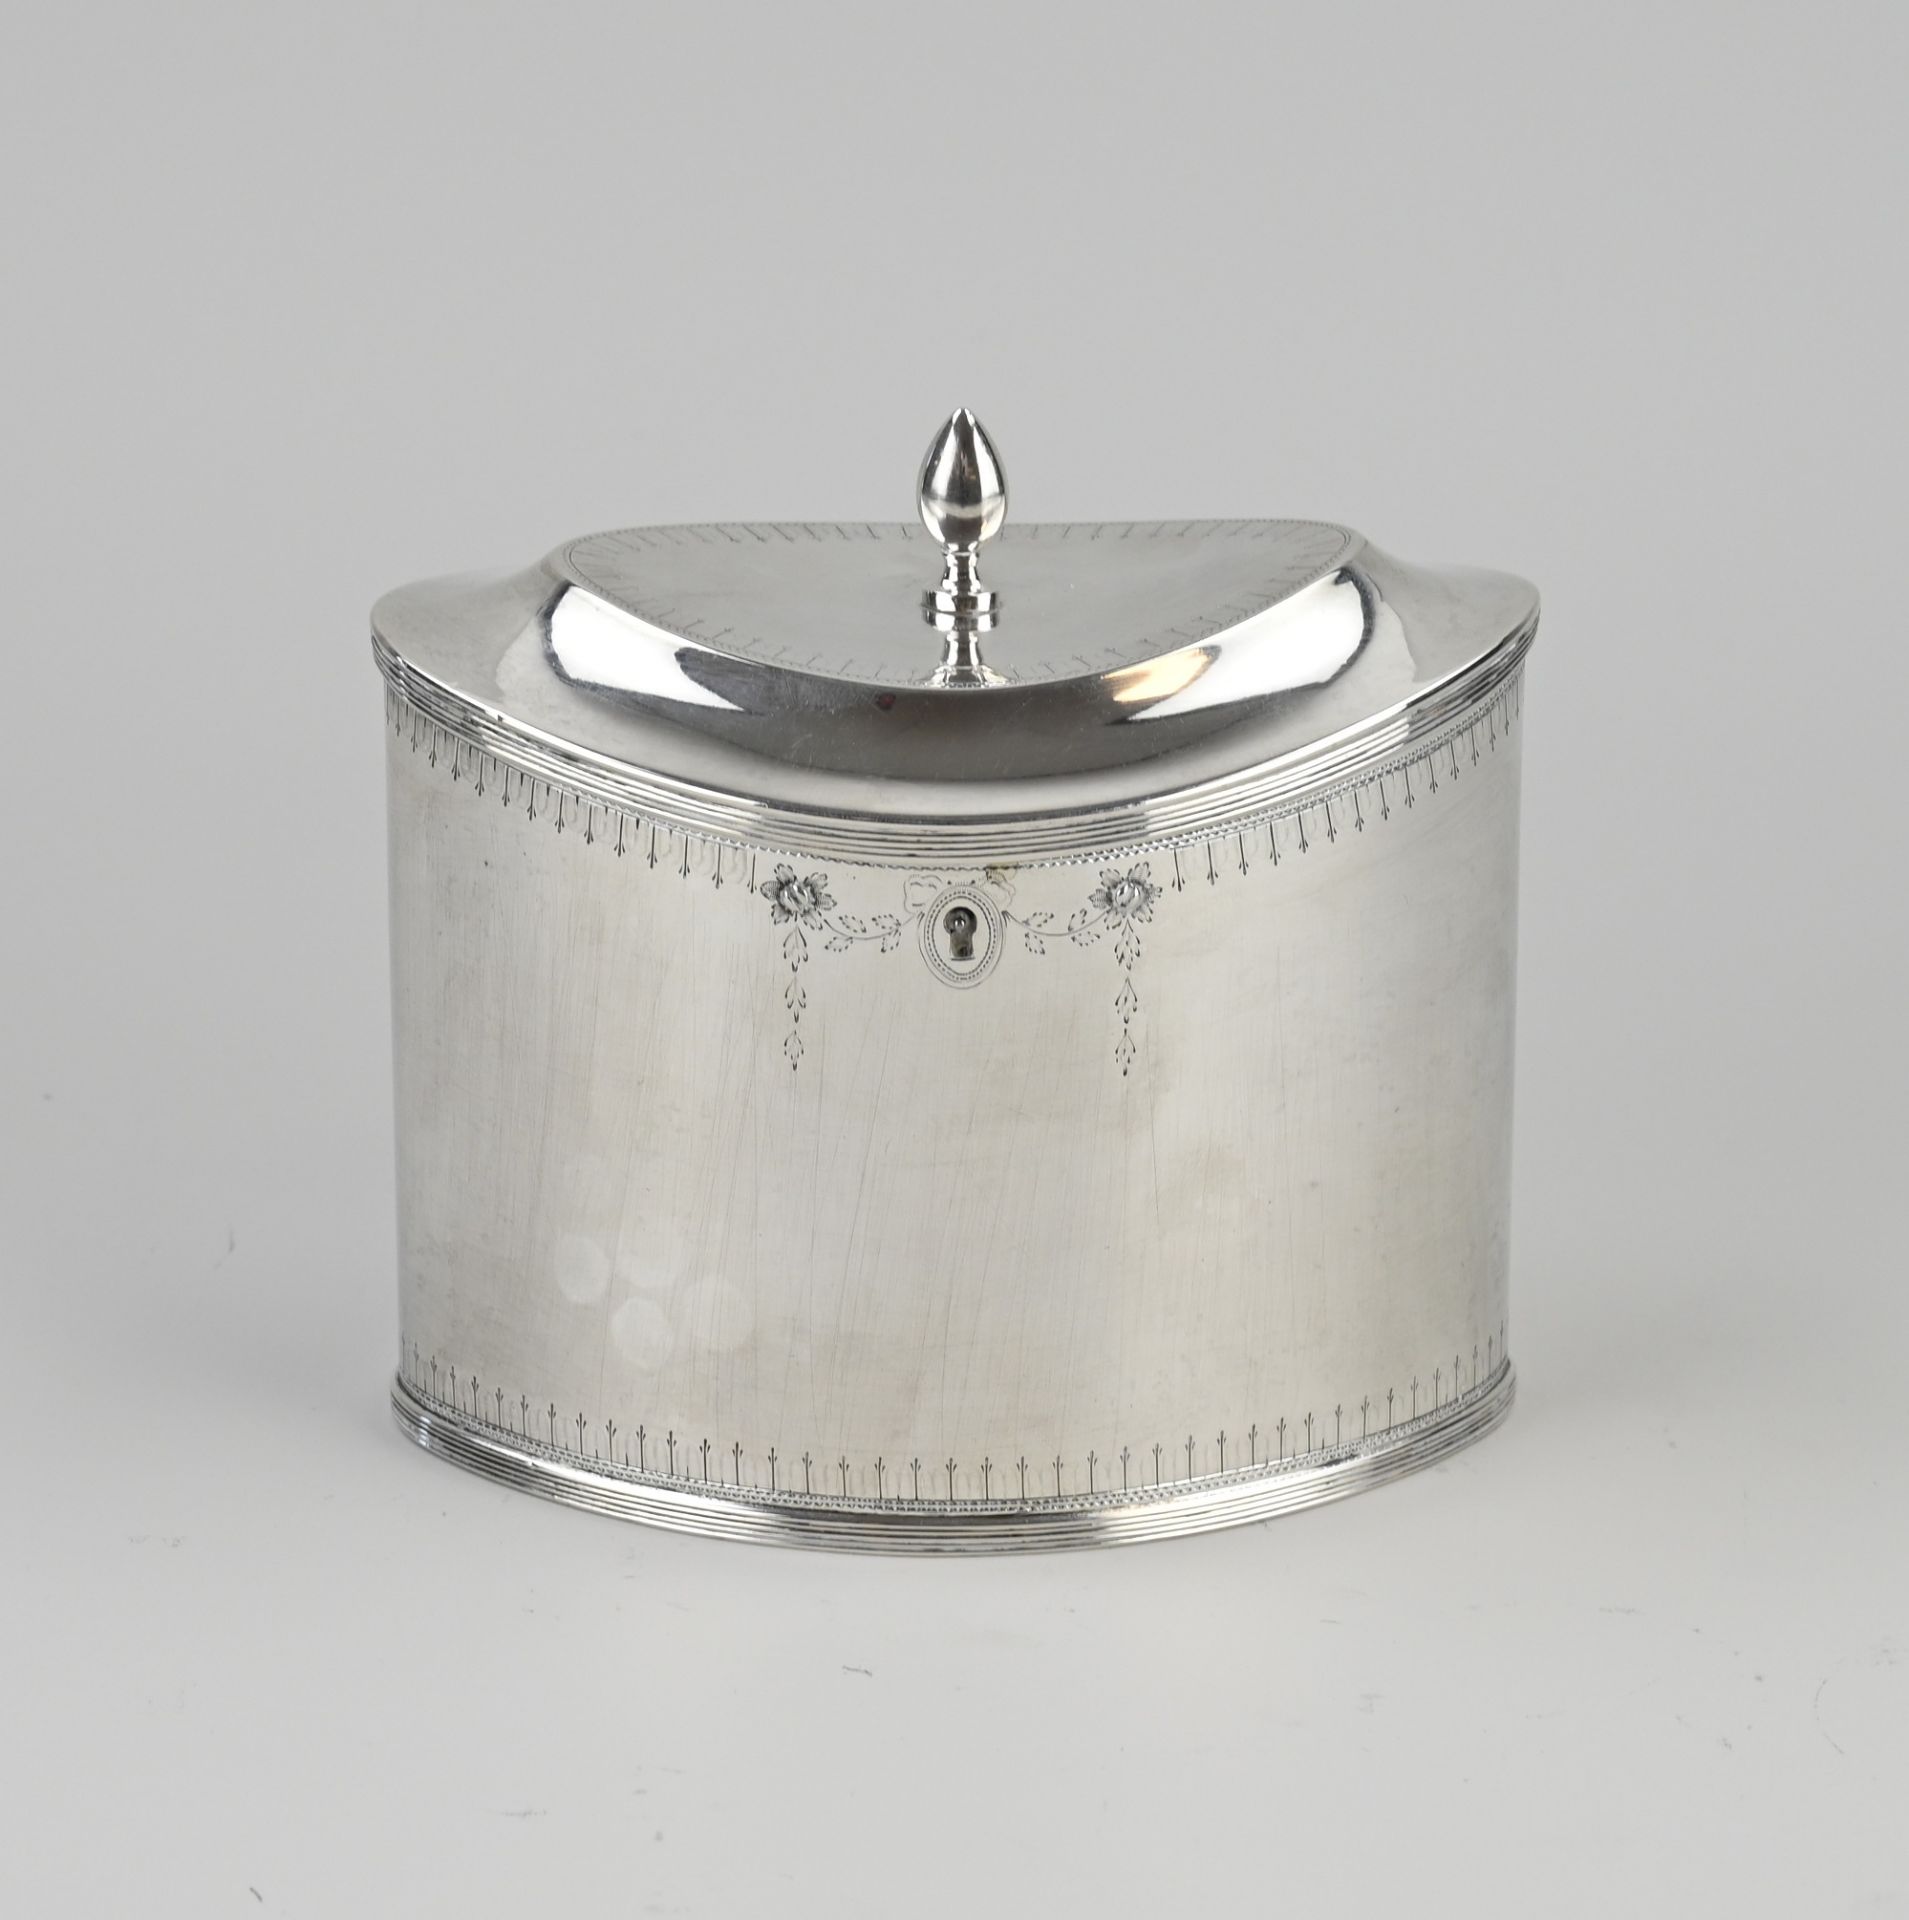 Antique silver tea caddy, 1807-1809